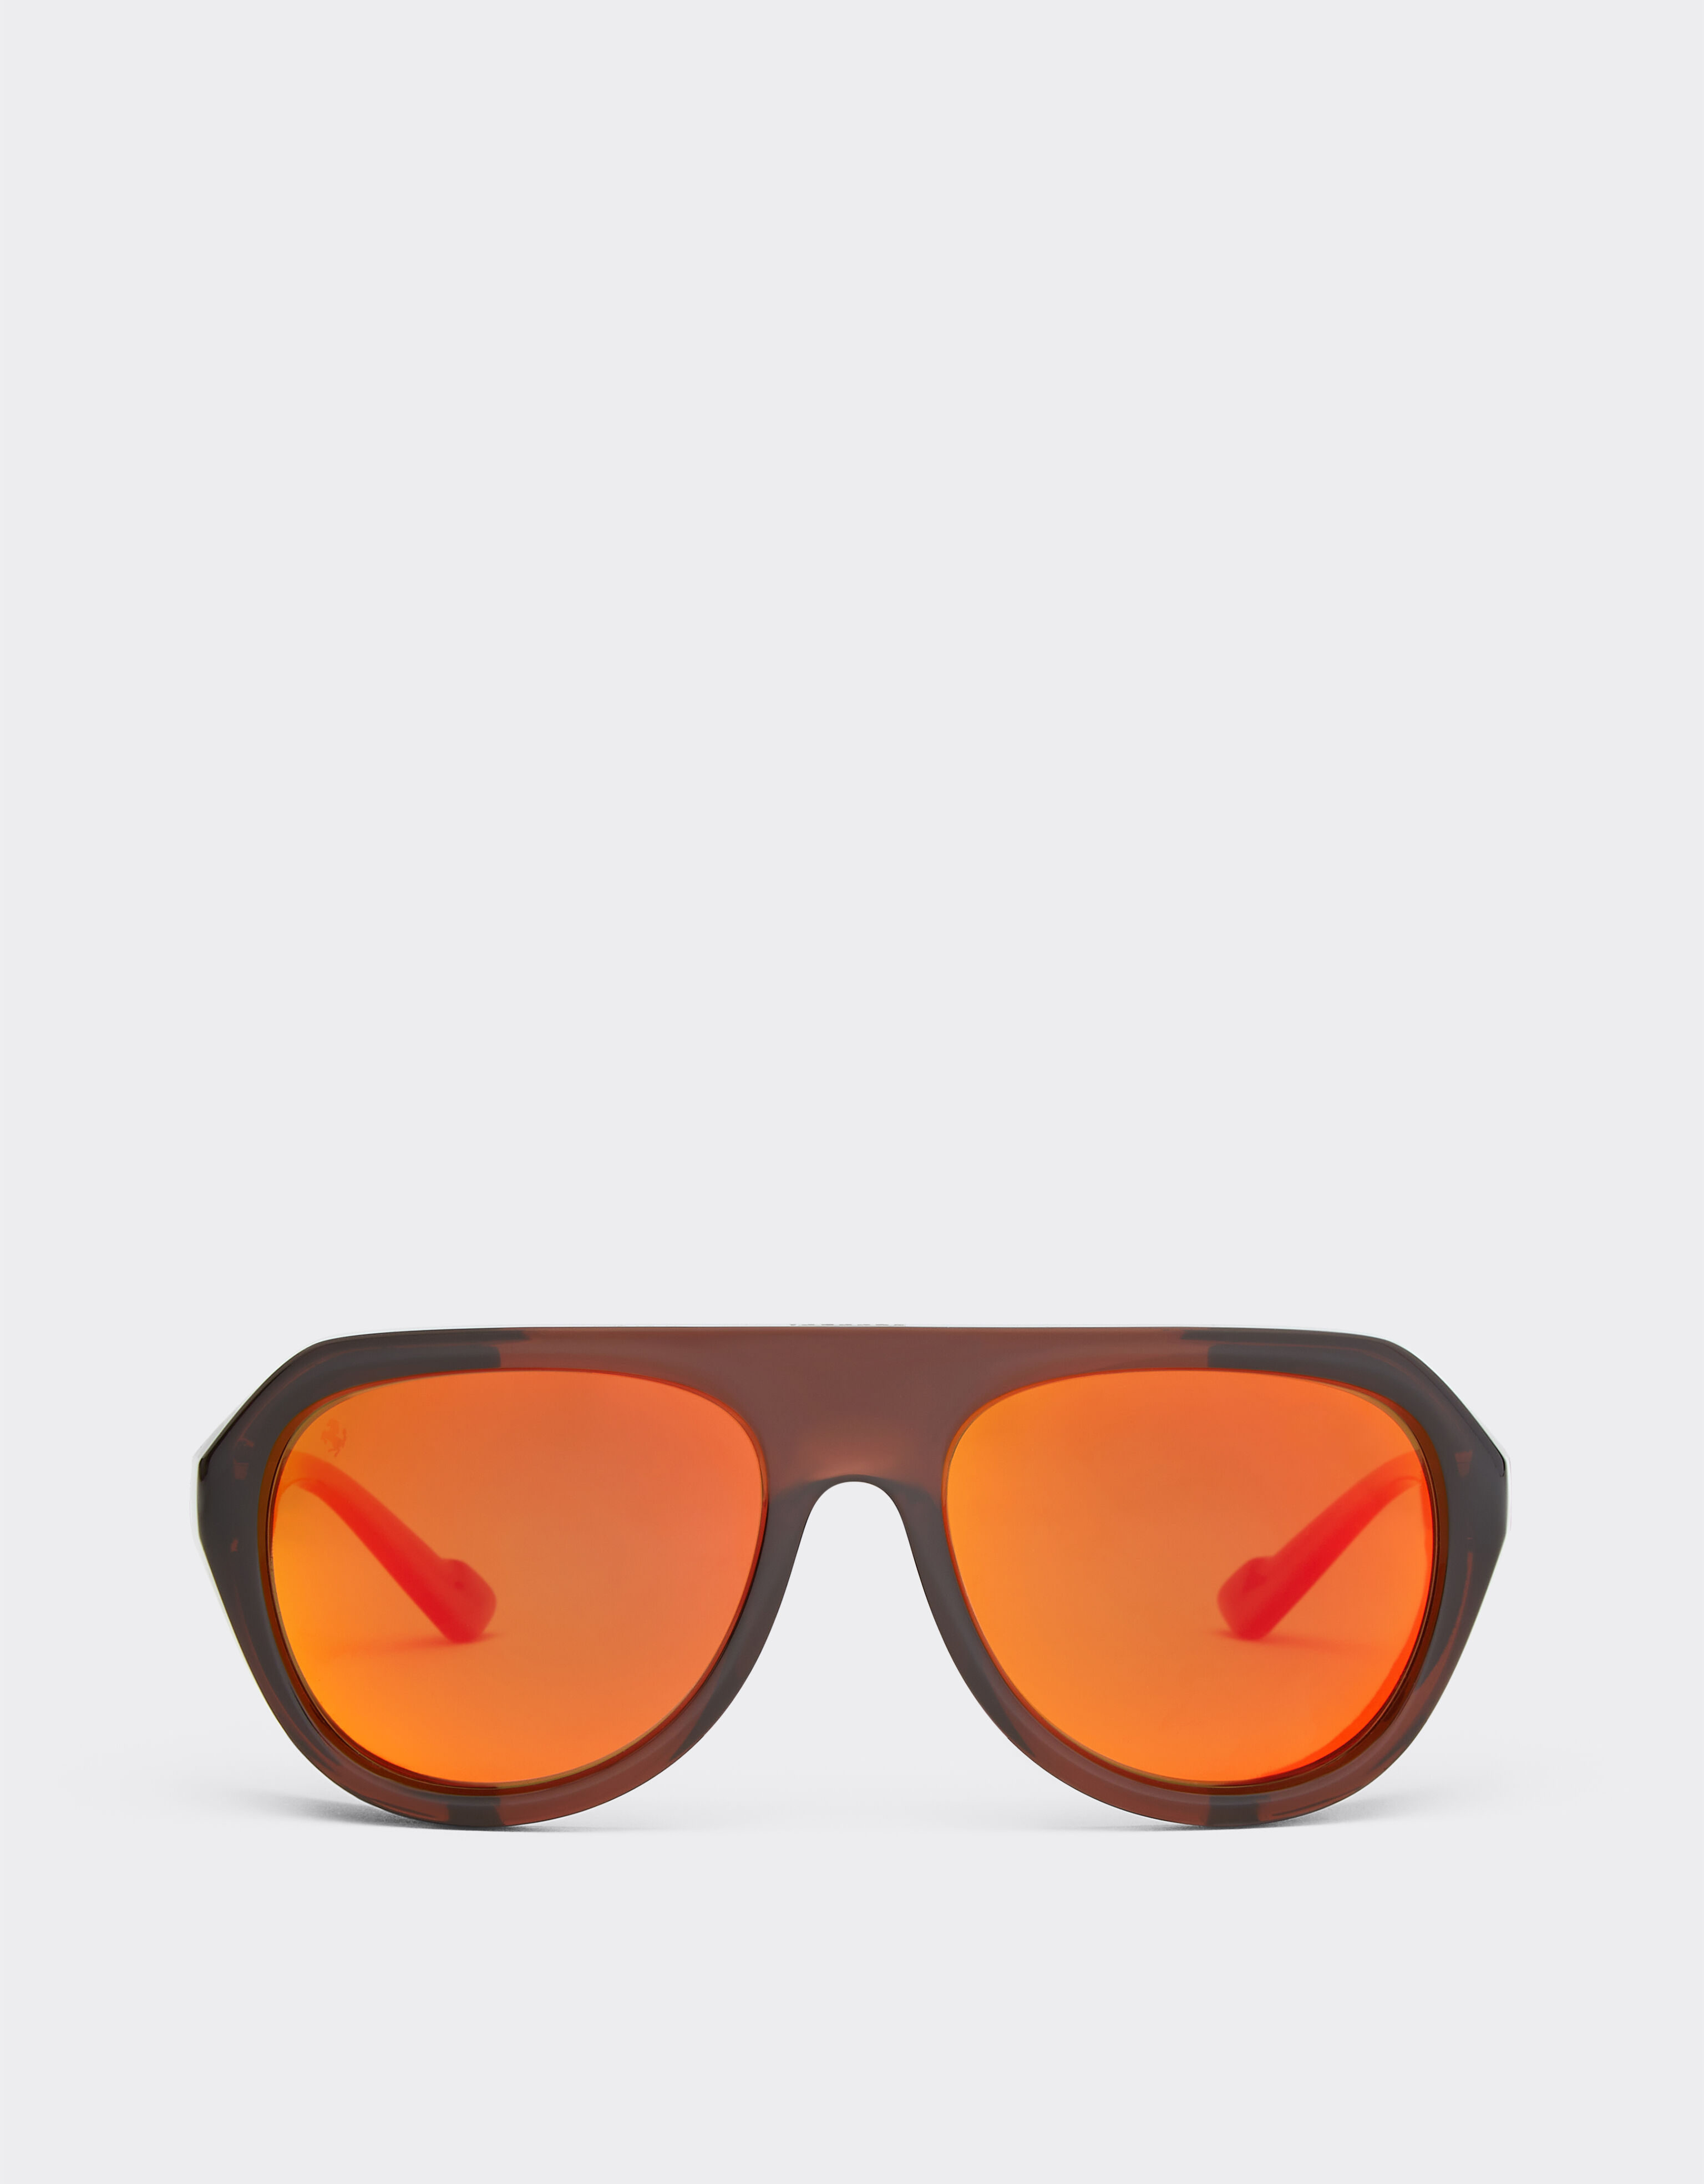 Ferrari Ferrari brown sunglasses with leather details and polarised mirror lenses Ingrid F1255f